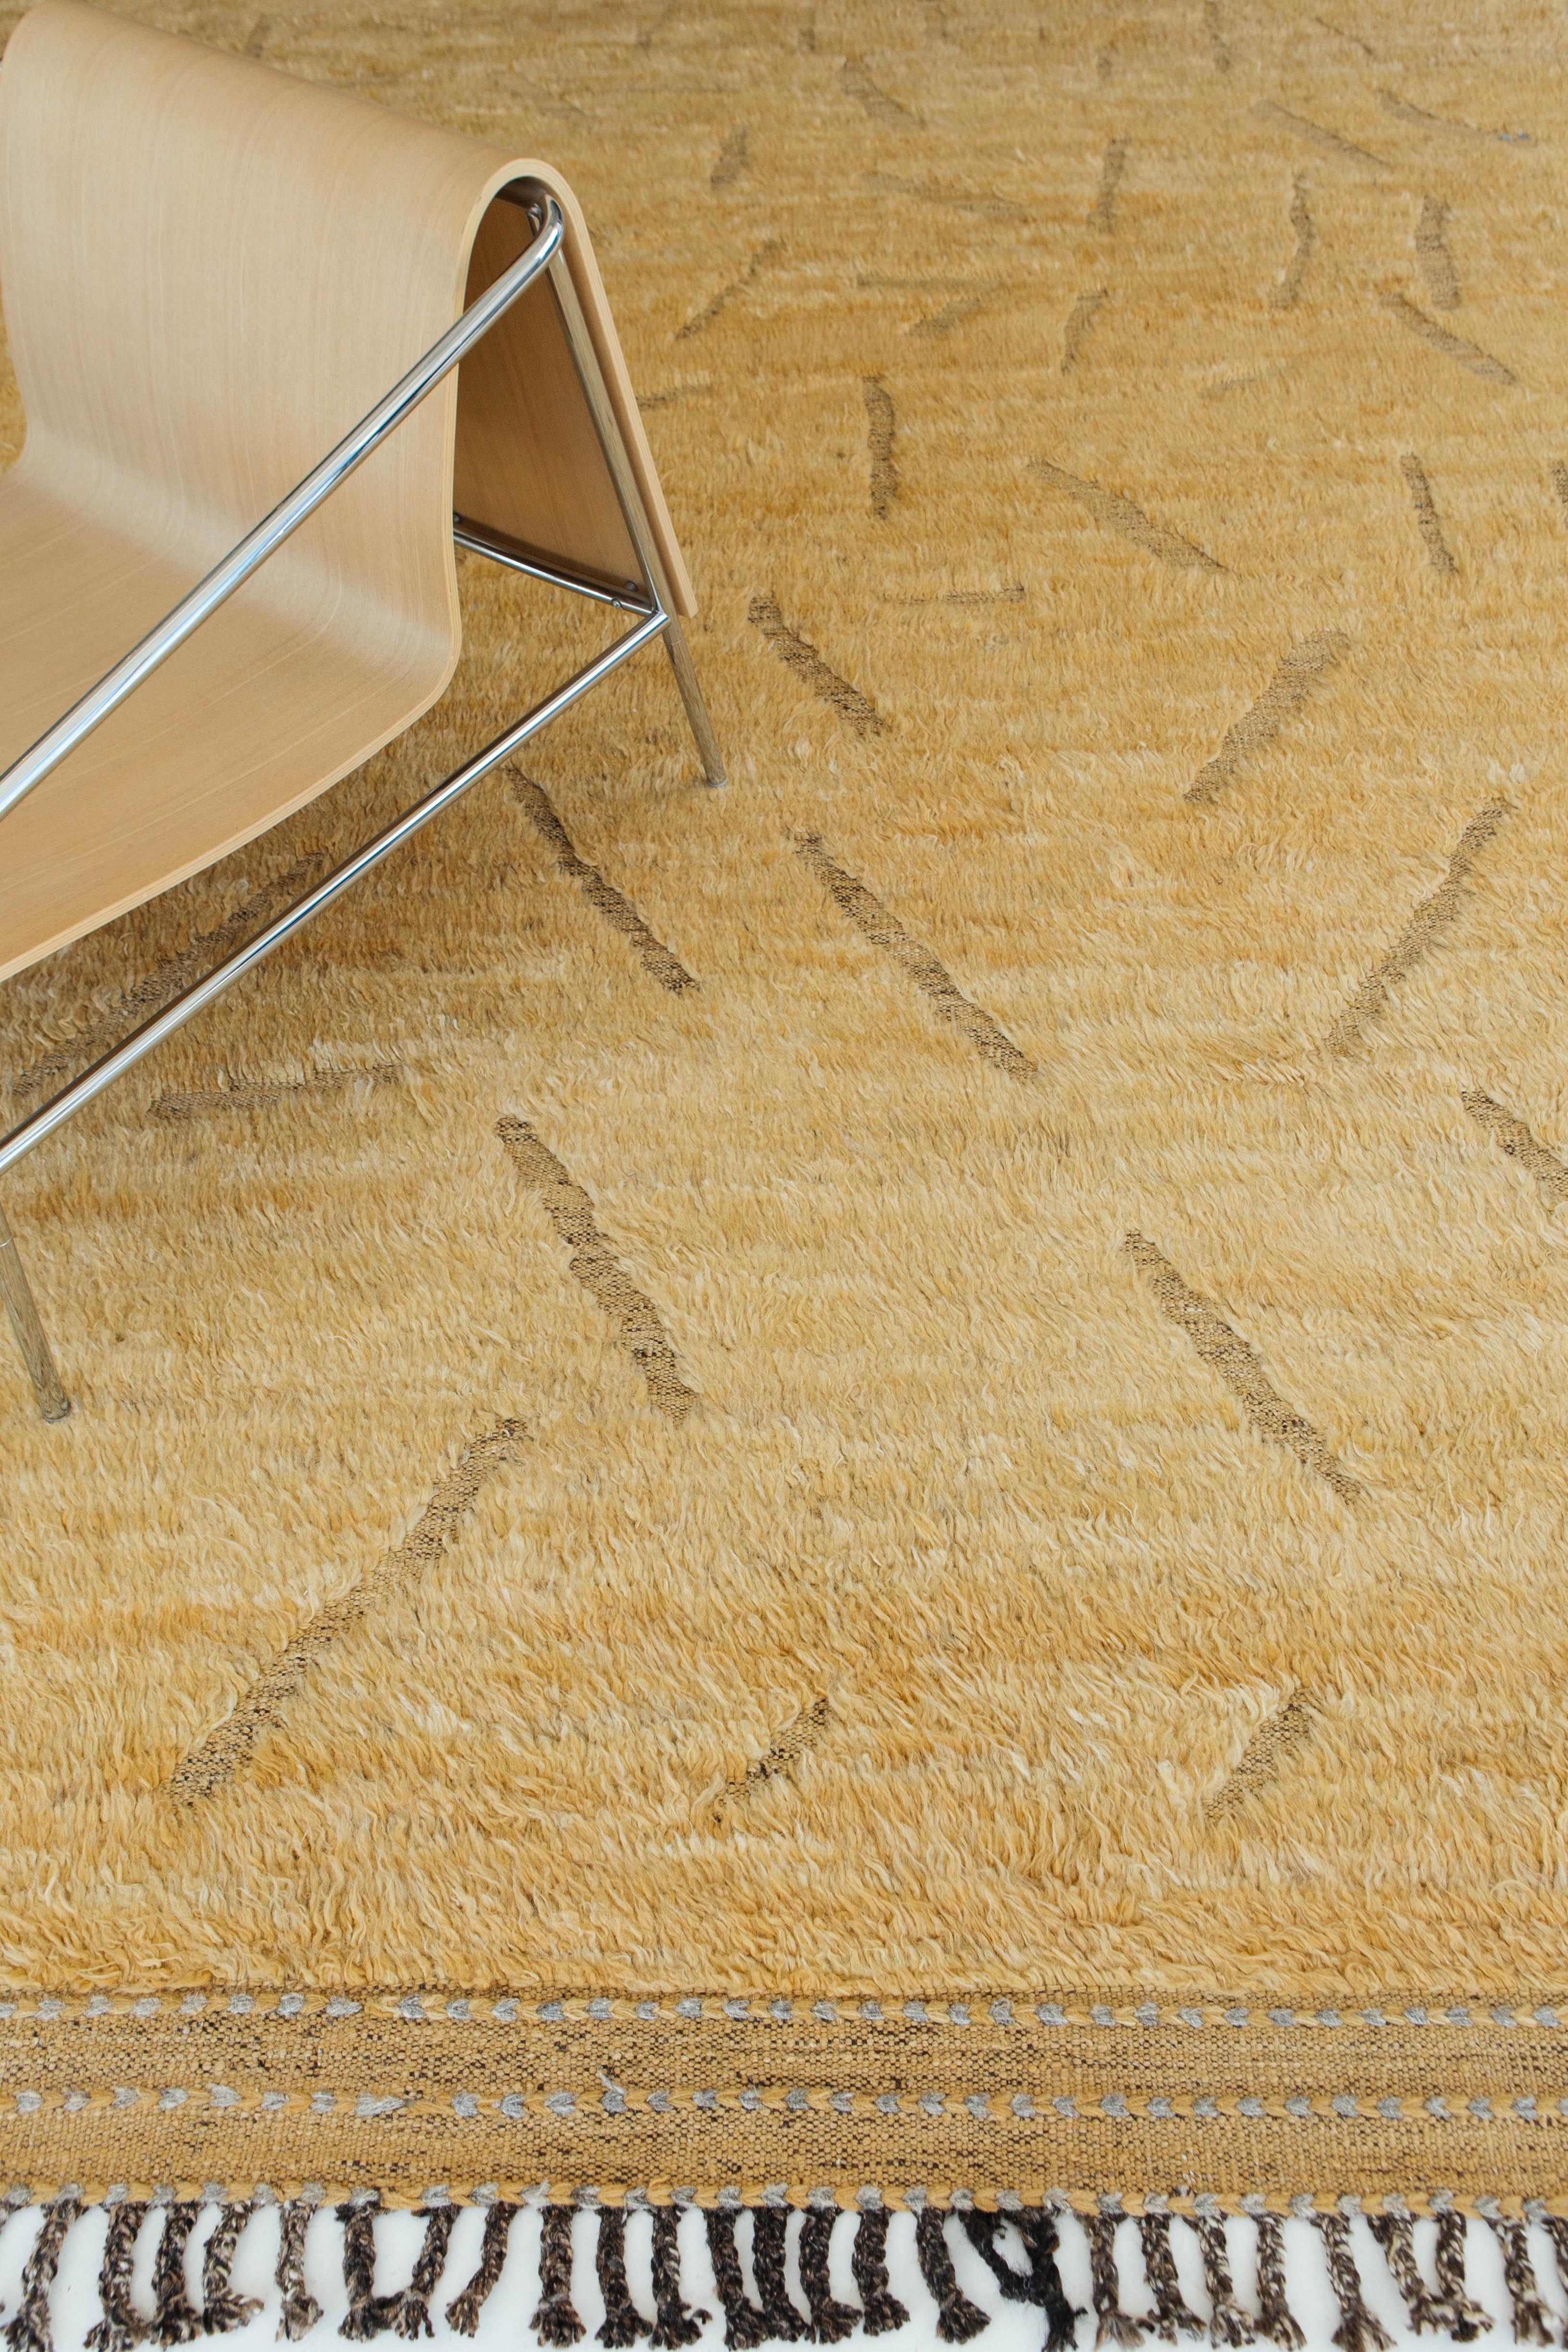 Asarotos ist ein lebhafter, handgeknüpfter Teppich in Kurkuma, der Leben und Licht in den Raum bringt. Das Design ist mit geprägten Details im Zottelflor versehen. Der in Los Angles mit viel Liebe zum Detail entworfene Asarotos ist dafür gemacht,